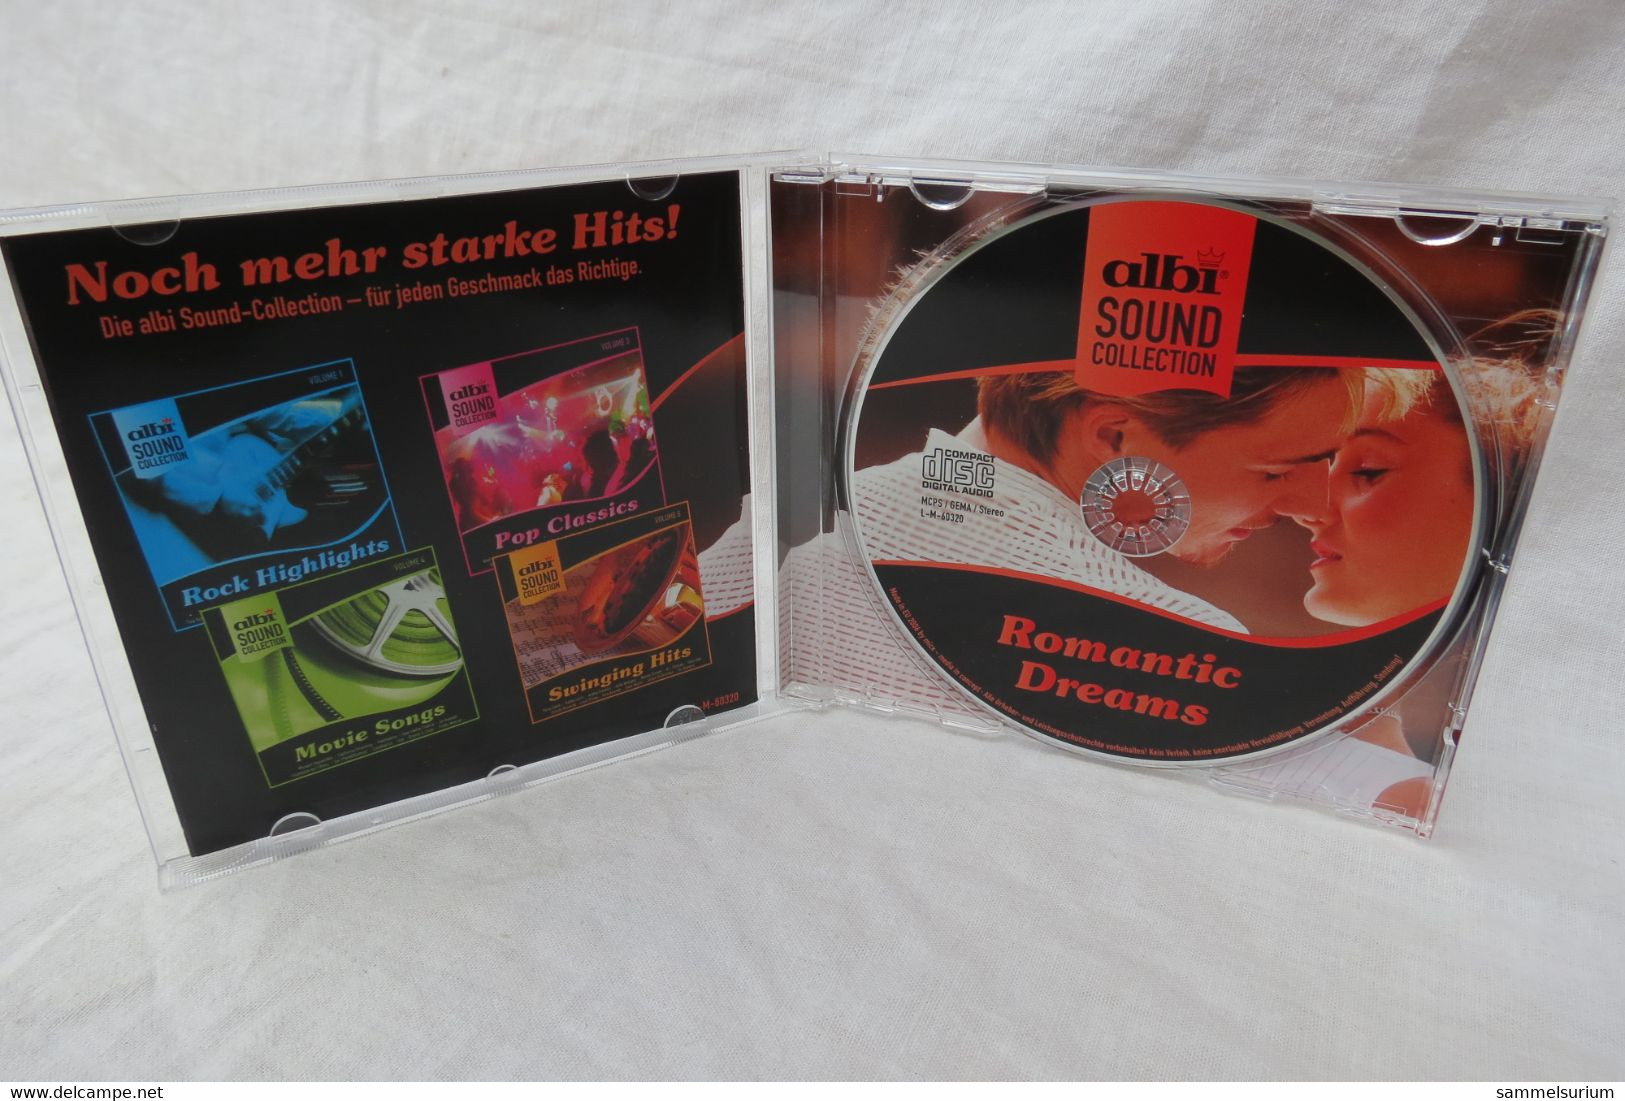 CD "Romantic Dreams" Aus Der Albi Sound Collection Volume 2 - Compilaties